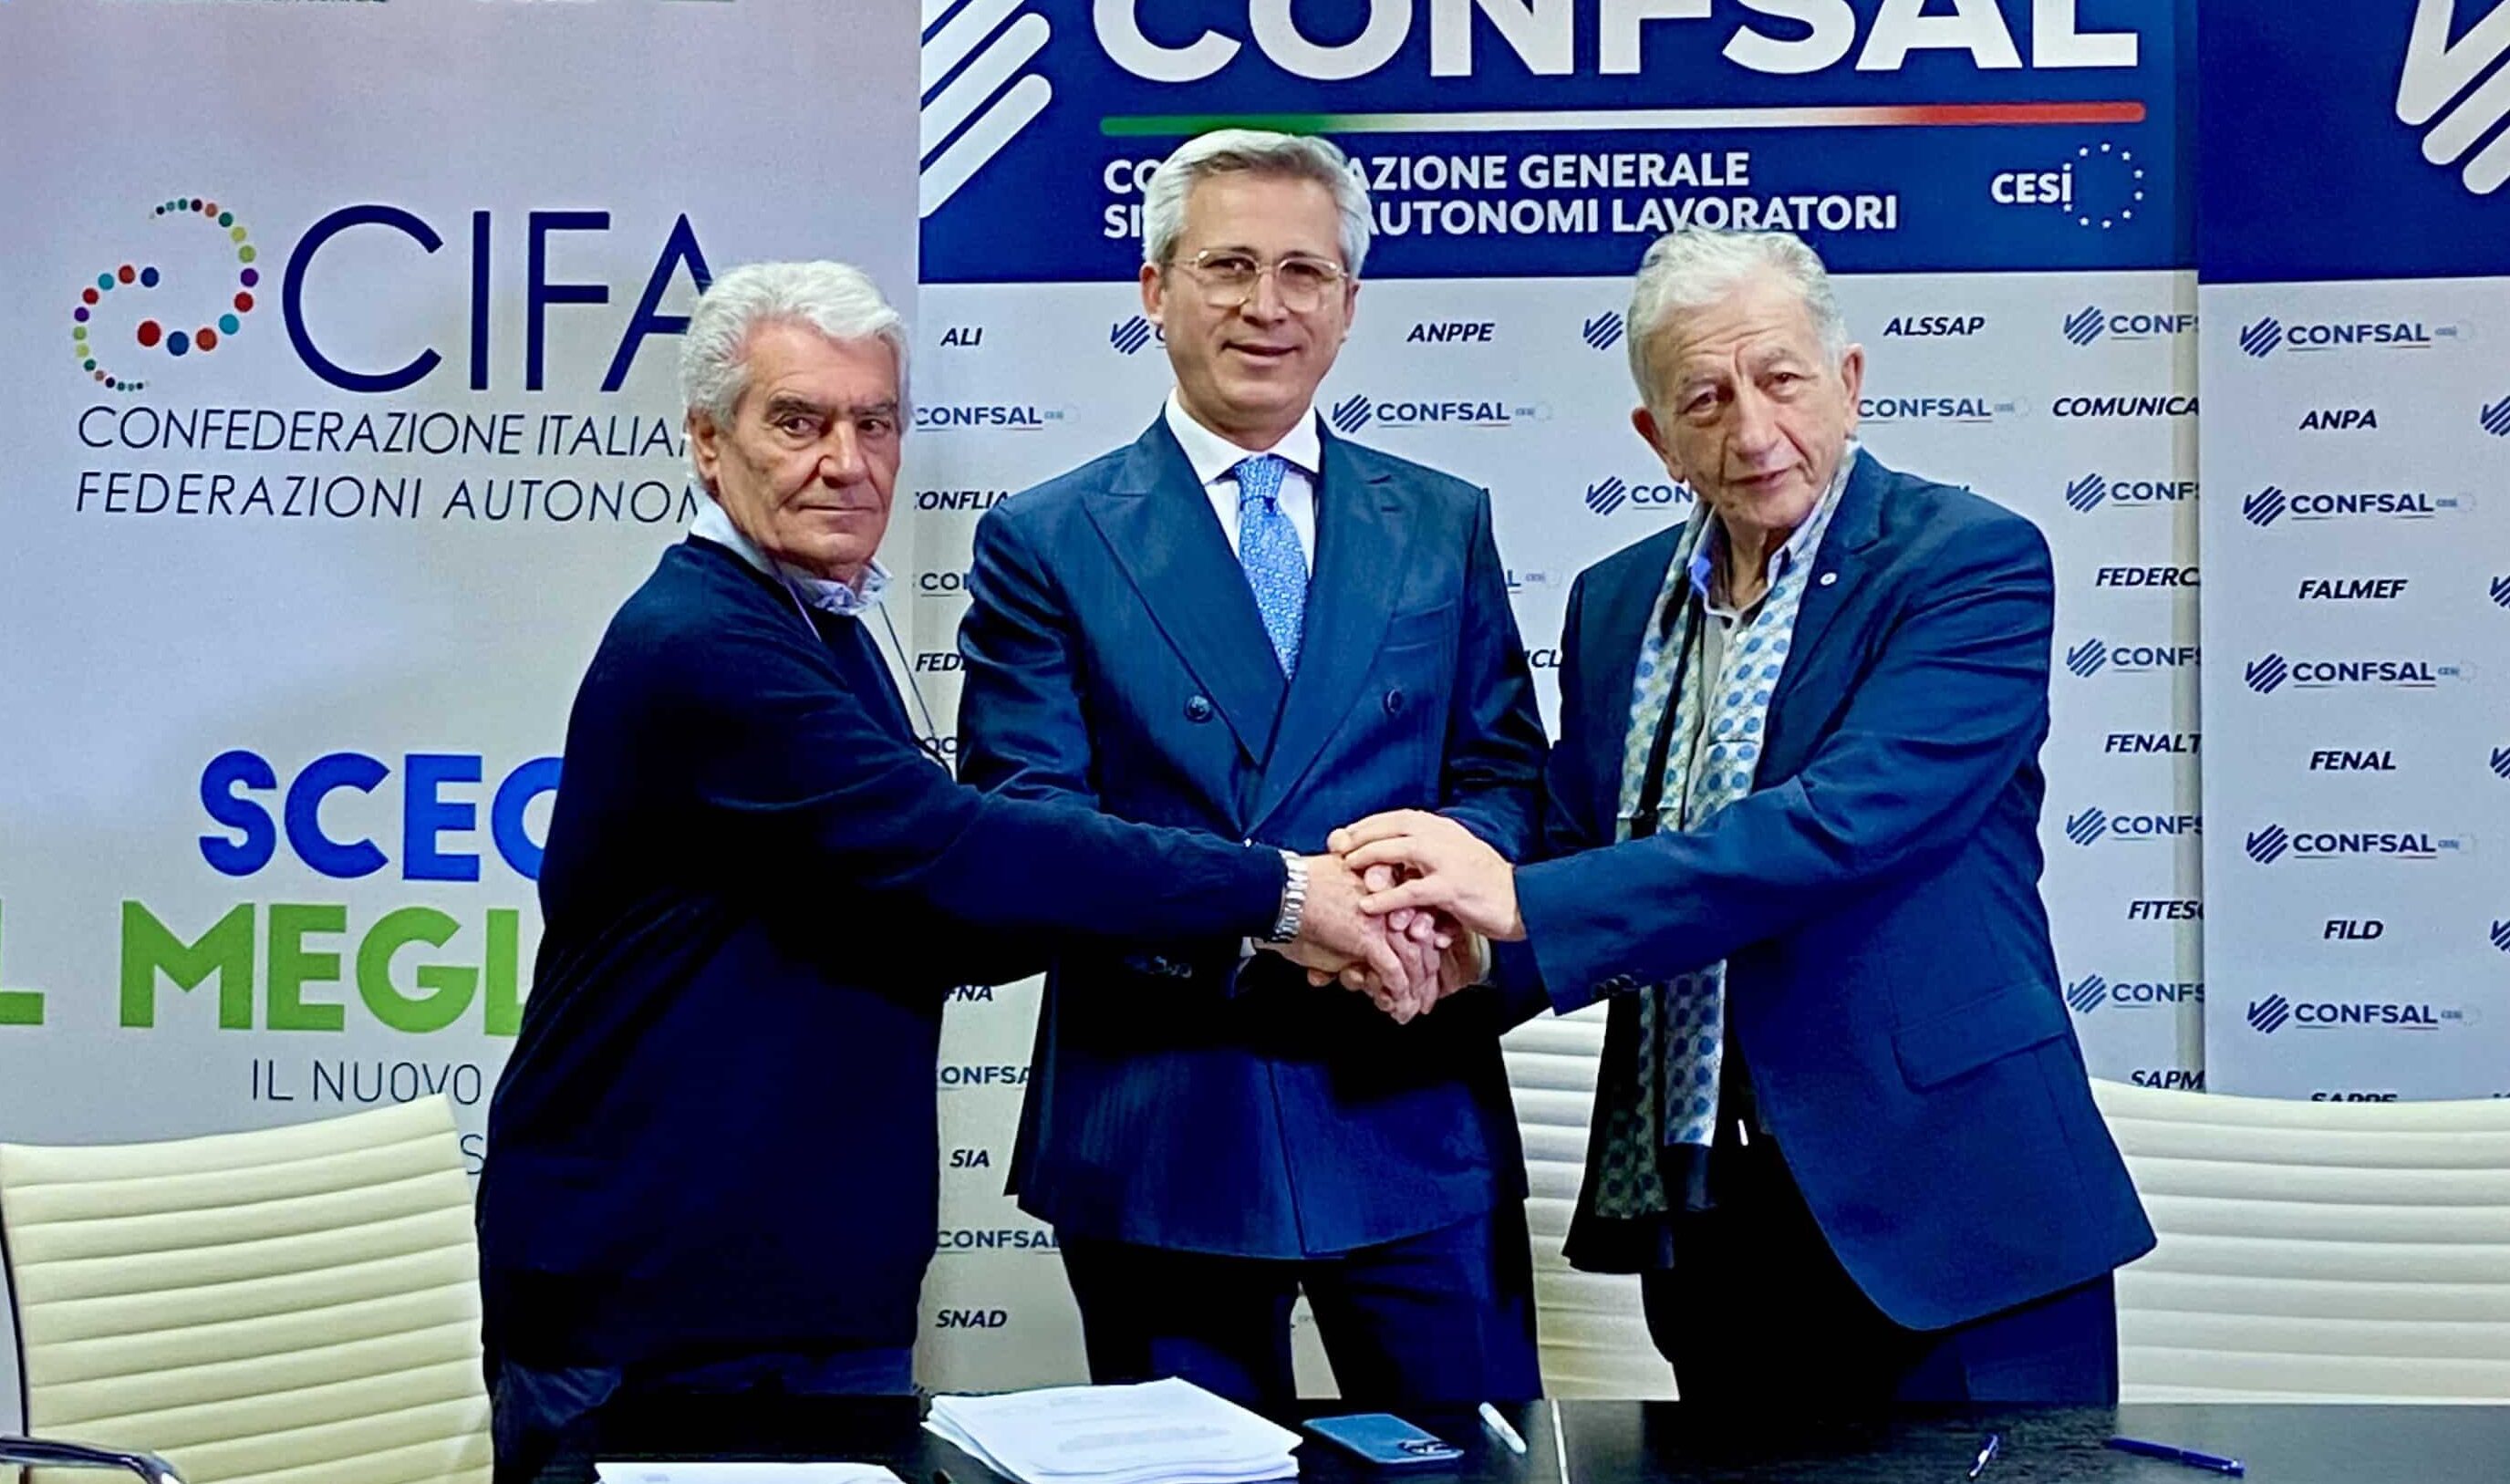 Settore alimentare, rinnovato il contratto collettivo nazionale di Cifa-Confsal